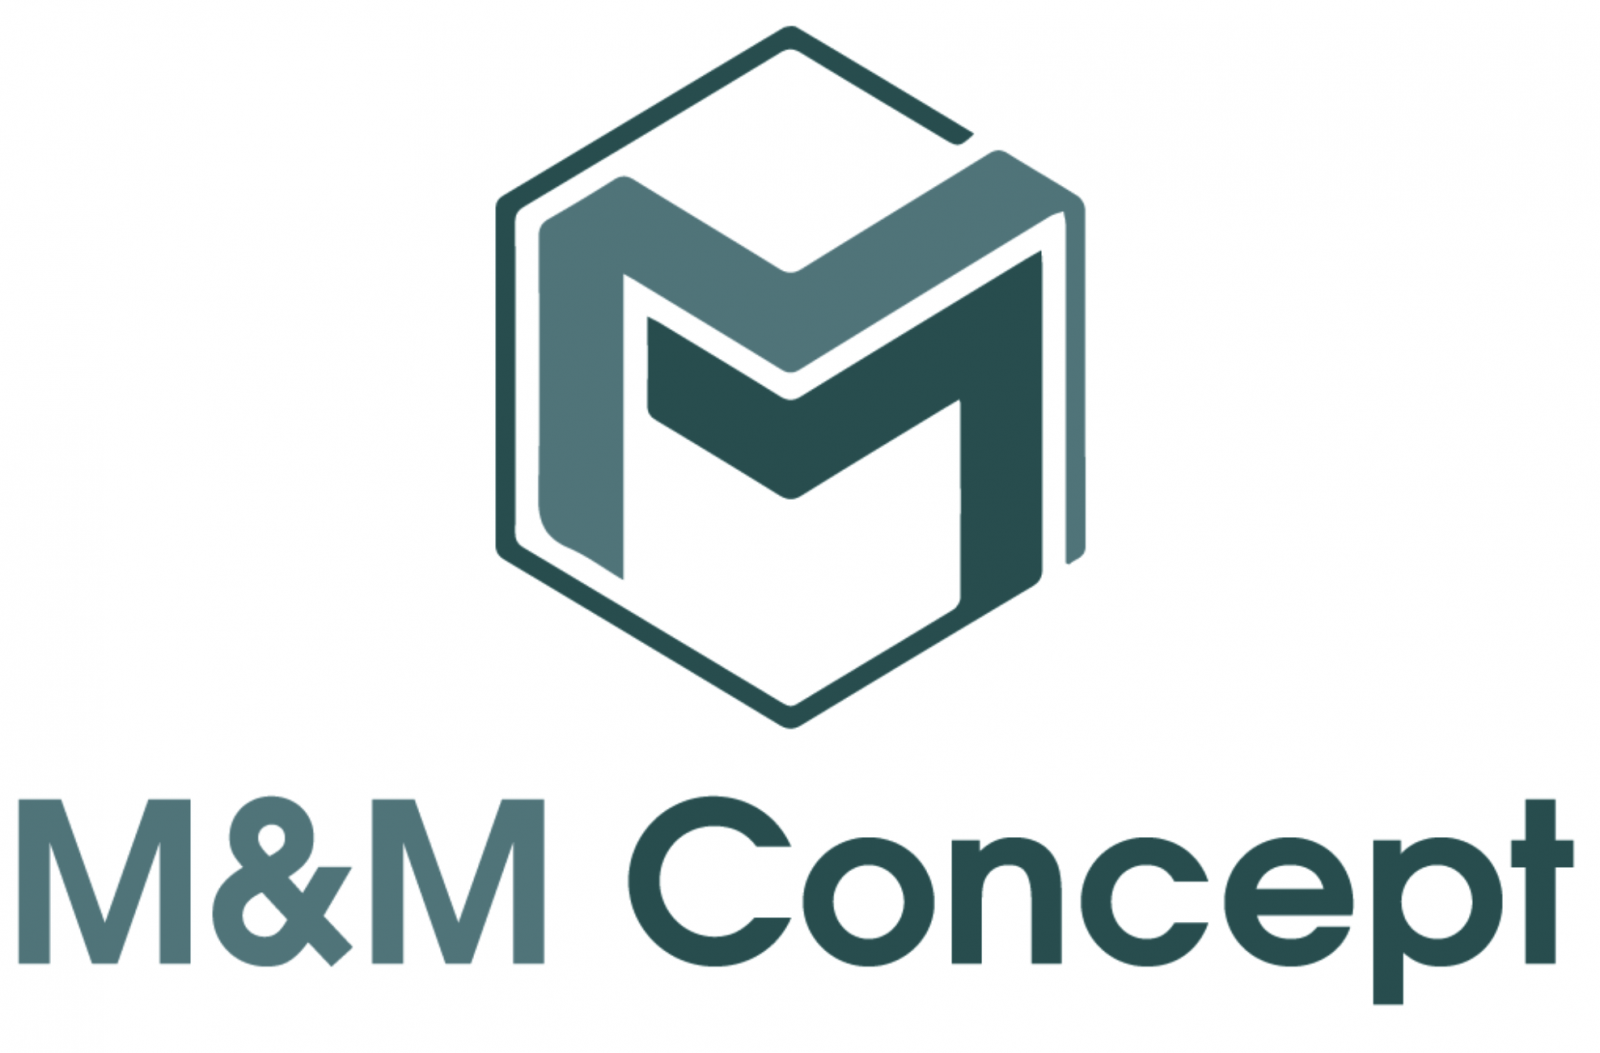 M&M CONCEPT 